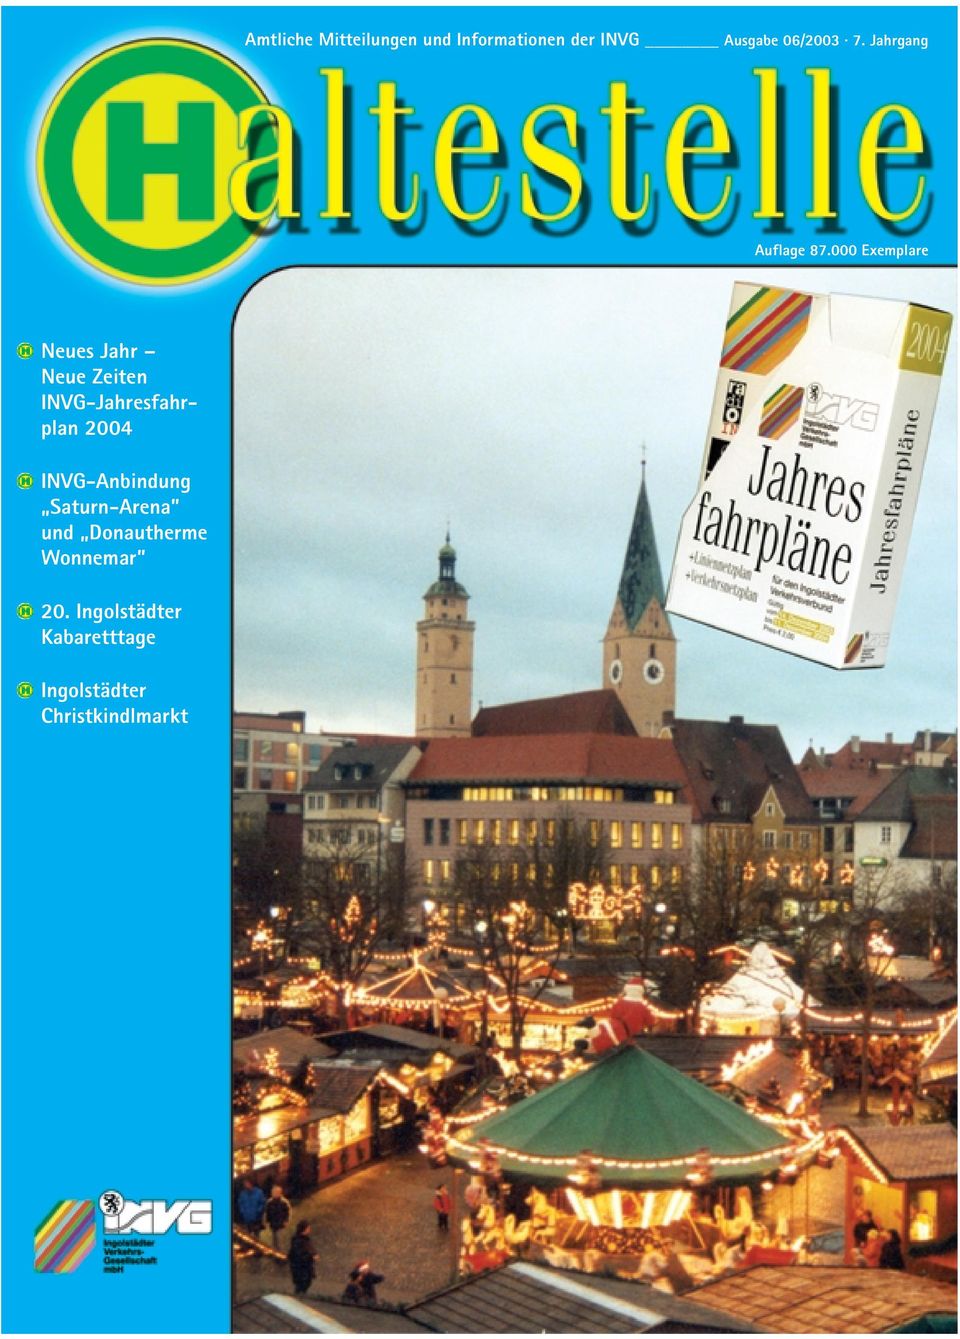 000 Exemplare Neues Jahr Neue Zeiten INVG-Jahresfahrplan 2004